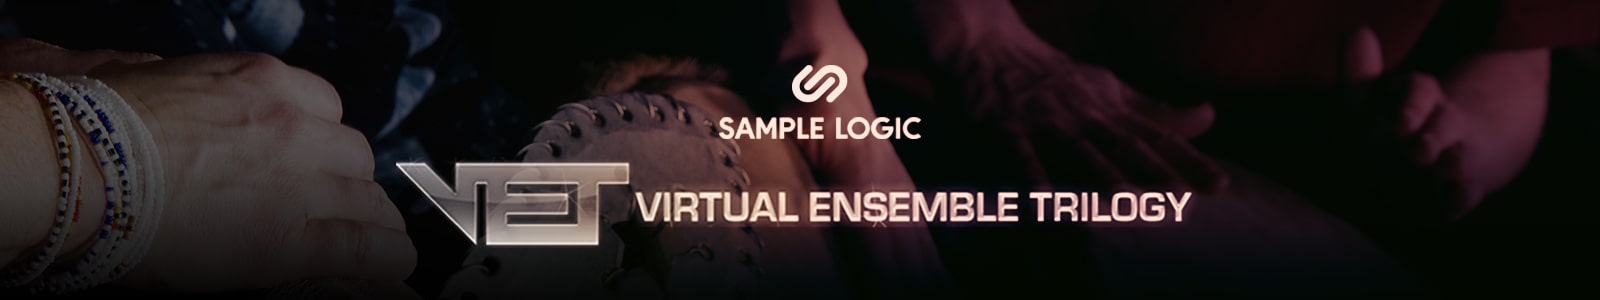 vet by sample logic